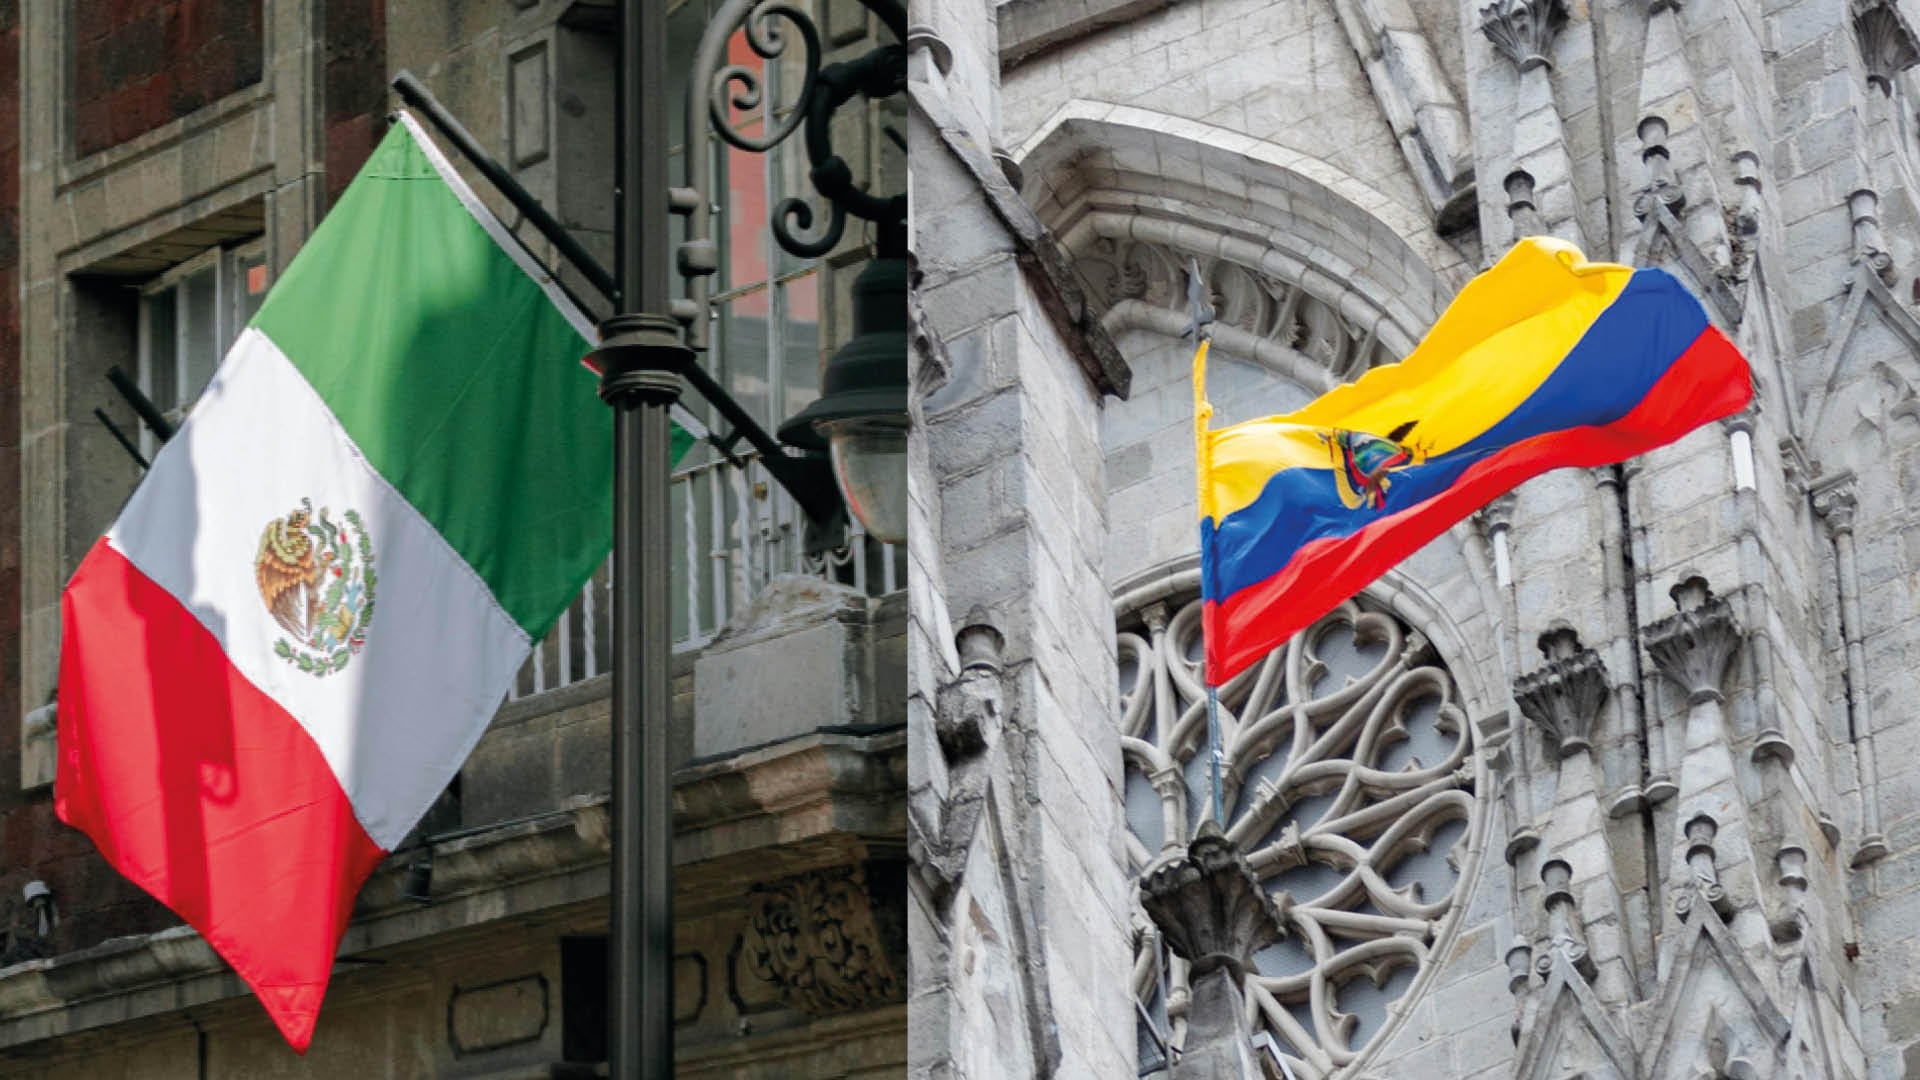 Banderas de México y Ecuador